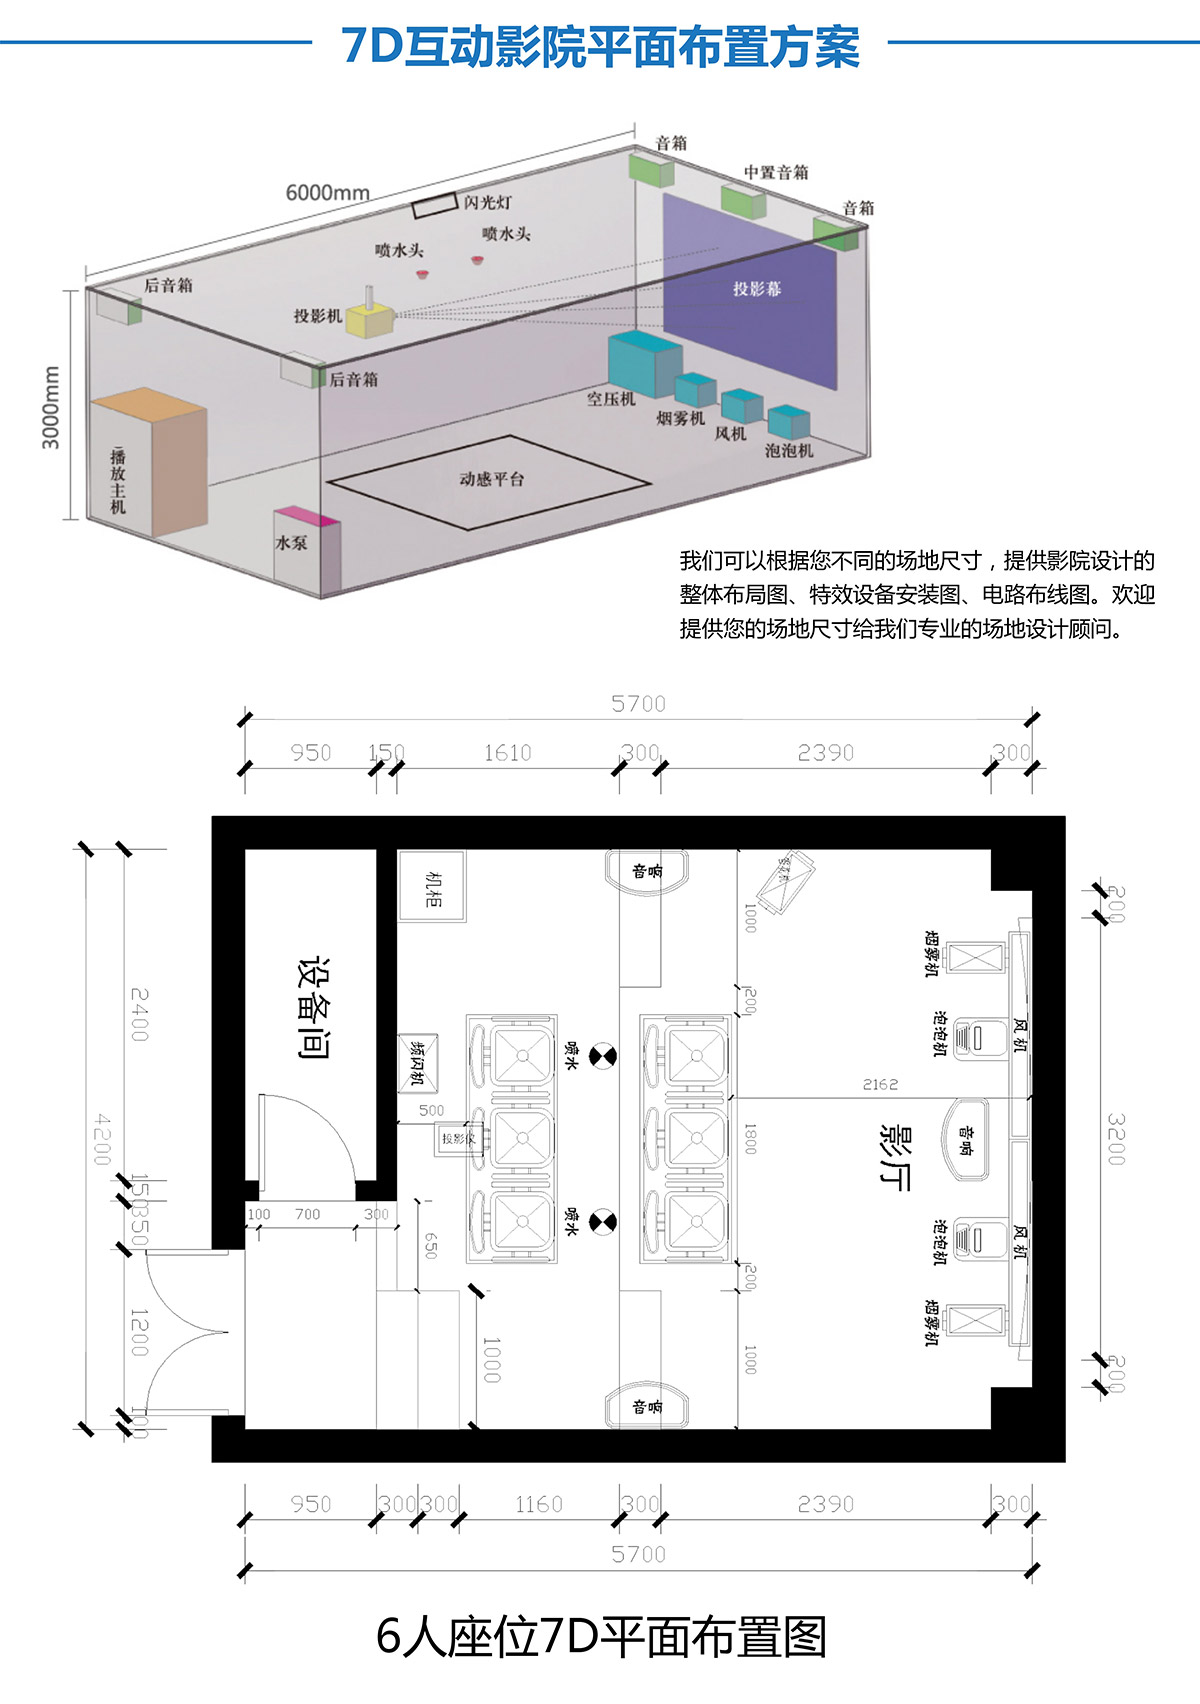 重庆7D互动影院平面布置方案.jpg